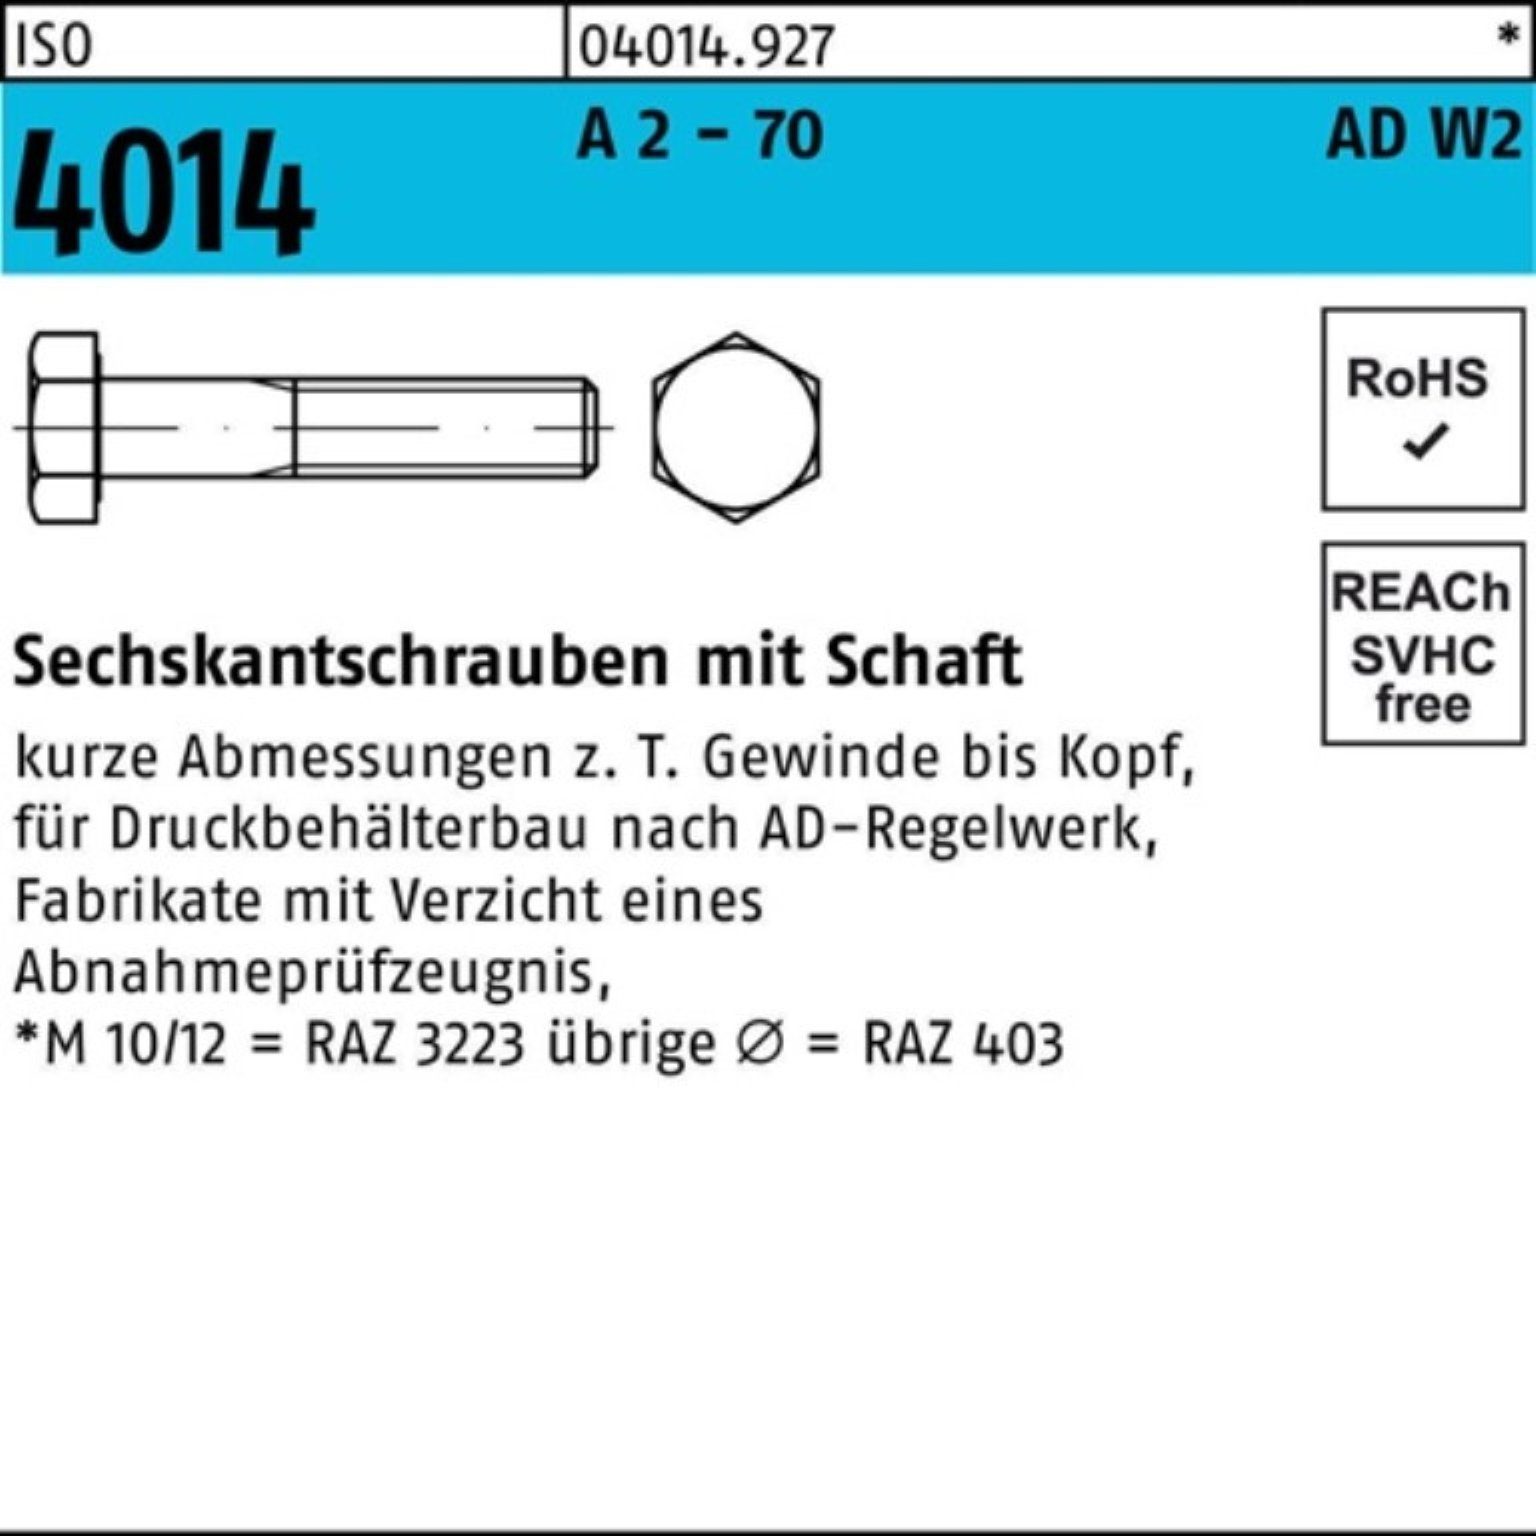 Sechskantschraube 2 Bufab Sechskantschraube M20x Pack 70 1 AD-W2 180 4014 ISO Schaft 100er A -